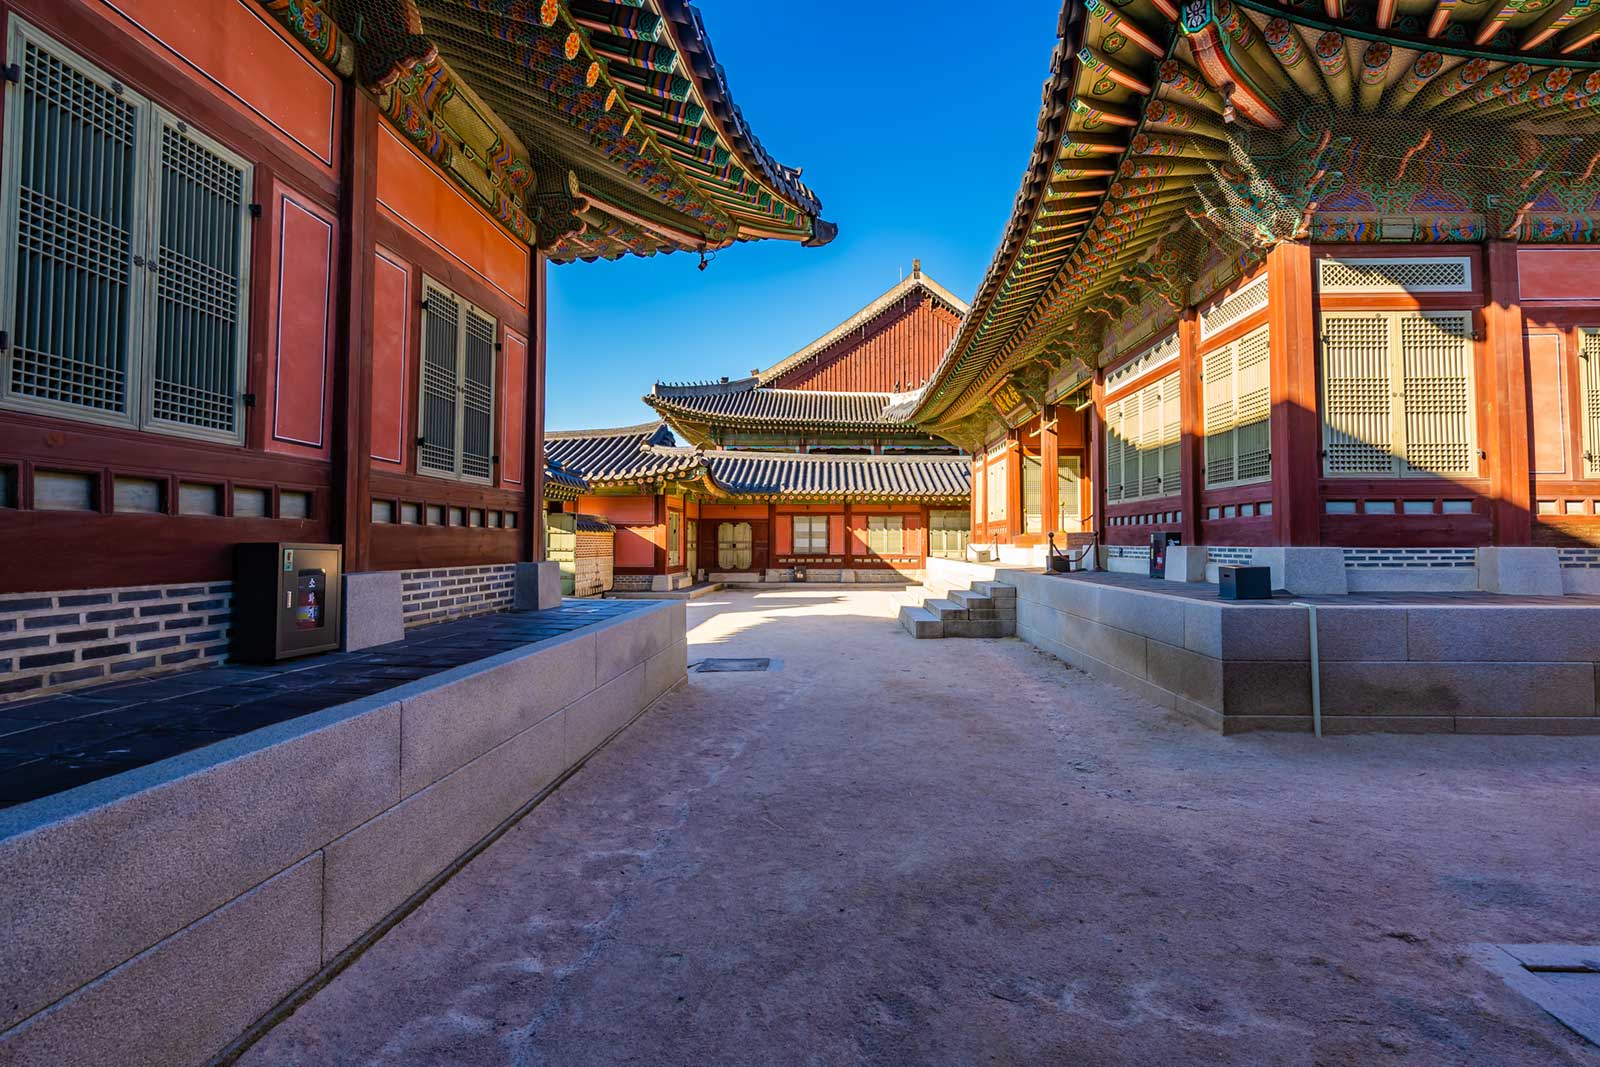 Inside the walls of Gyeongbokgung Palace